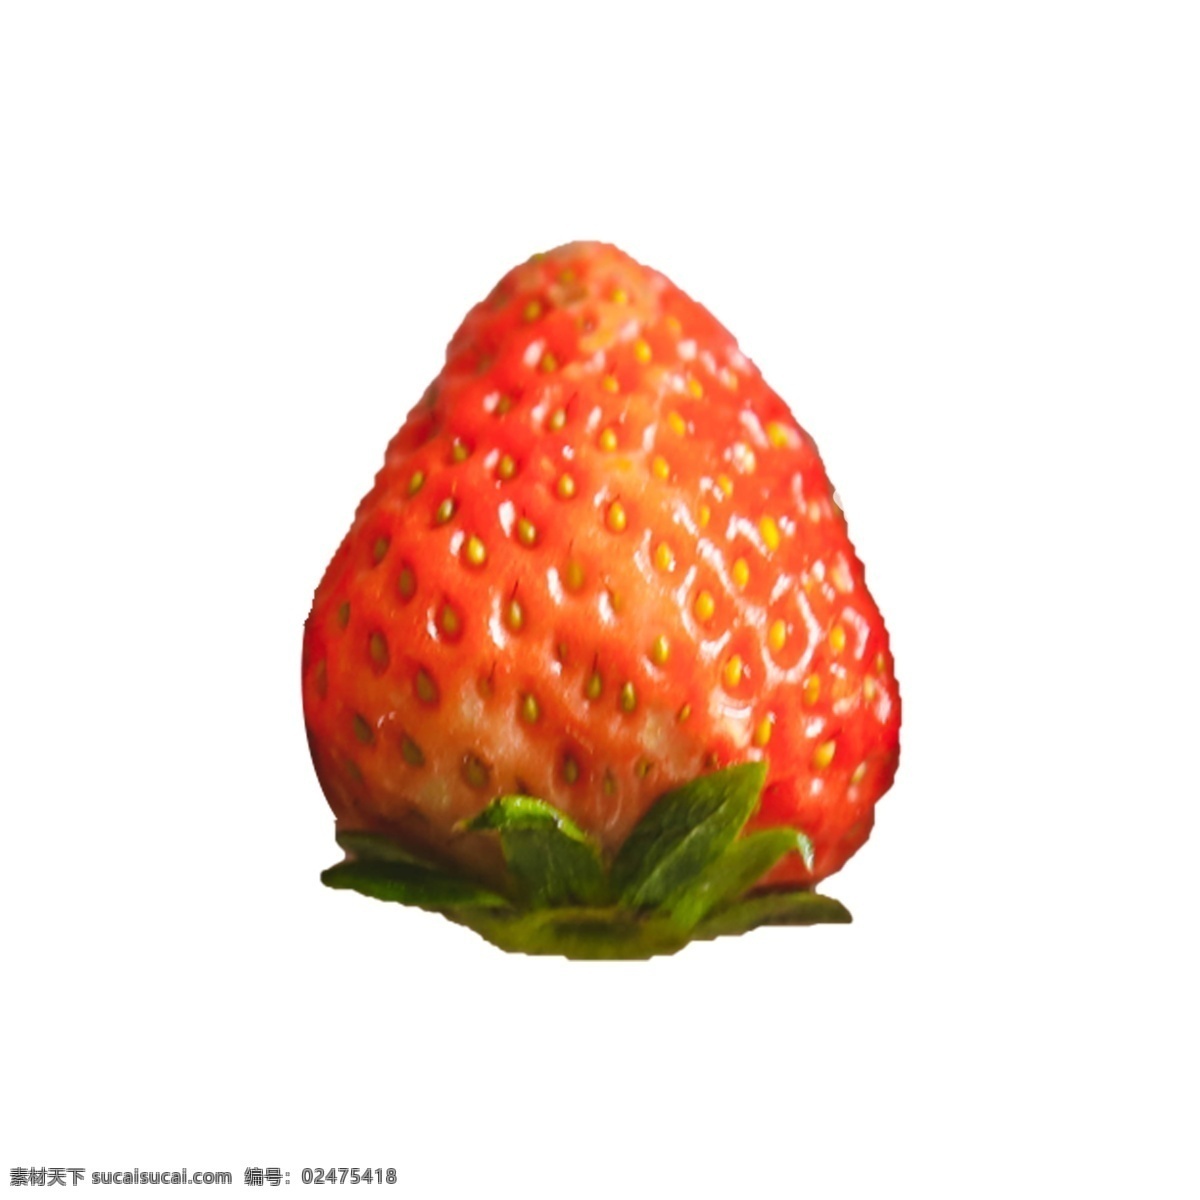 一个 新鲜 草莓 一个草莓 水果 植物 营养 维生素 美味 甜食 奶油草莓 绿叶 叶子 甘甜